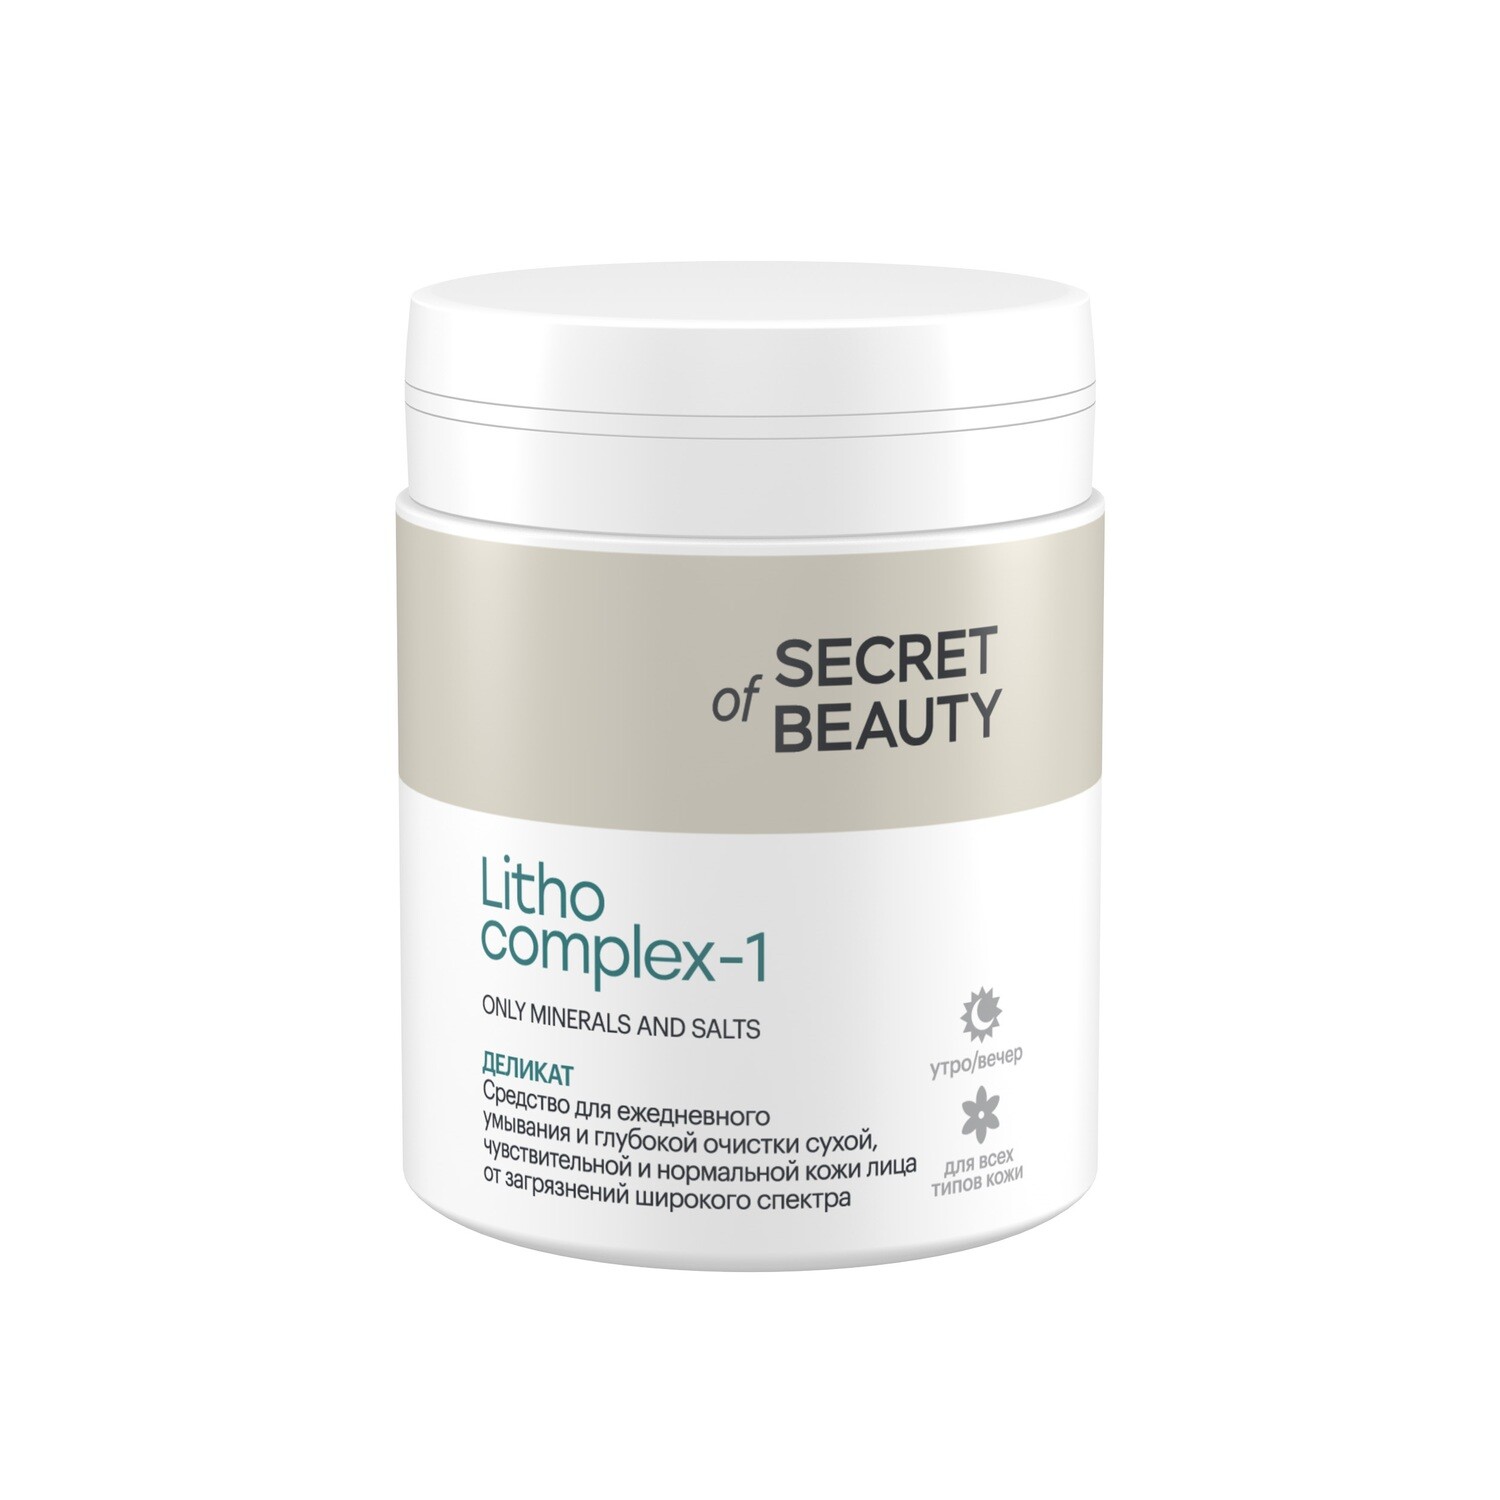 Secret of Beauty "LITHOCOMPLEX-1 ДЕЛИКАТ", для умывания сухой, чувствительной и нормальной кожи лица, 70 г